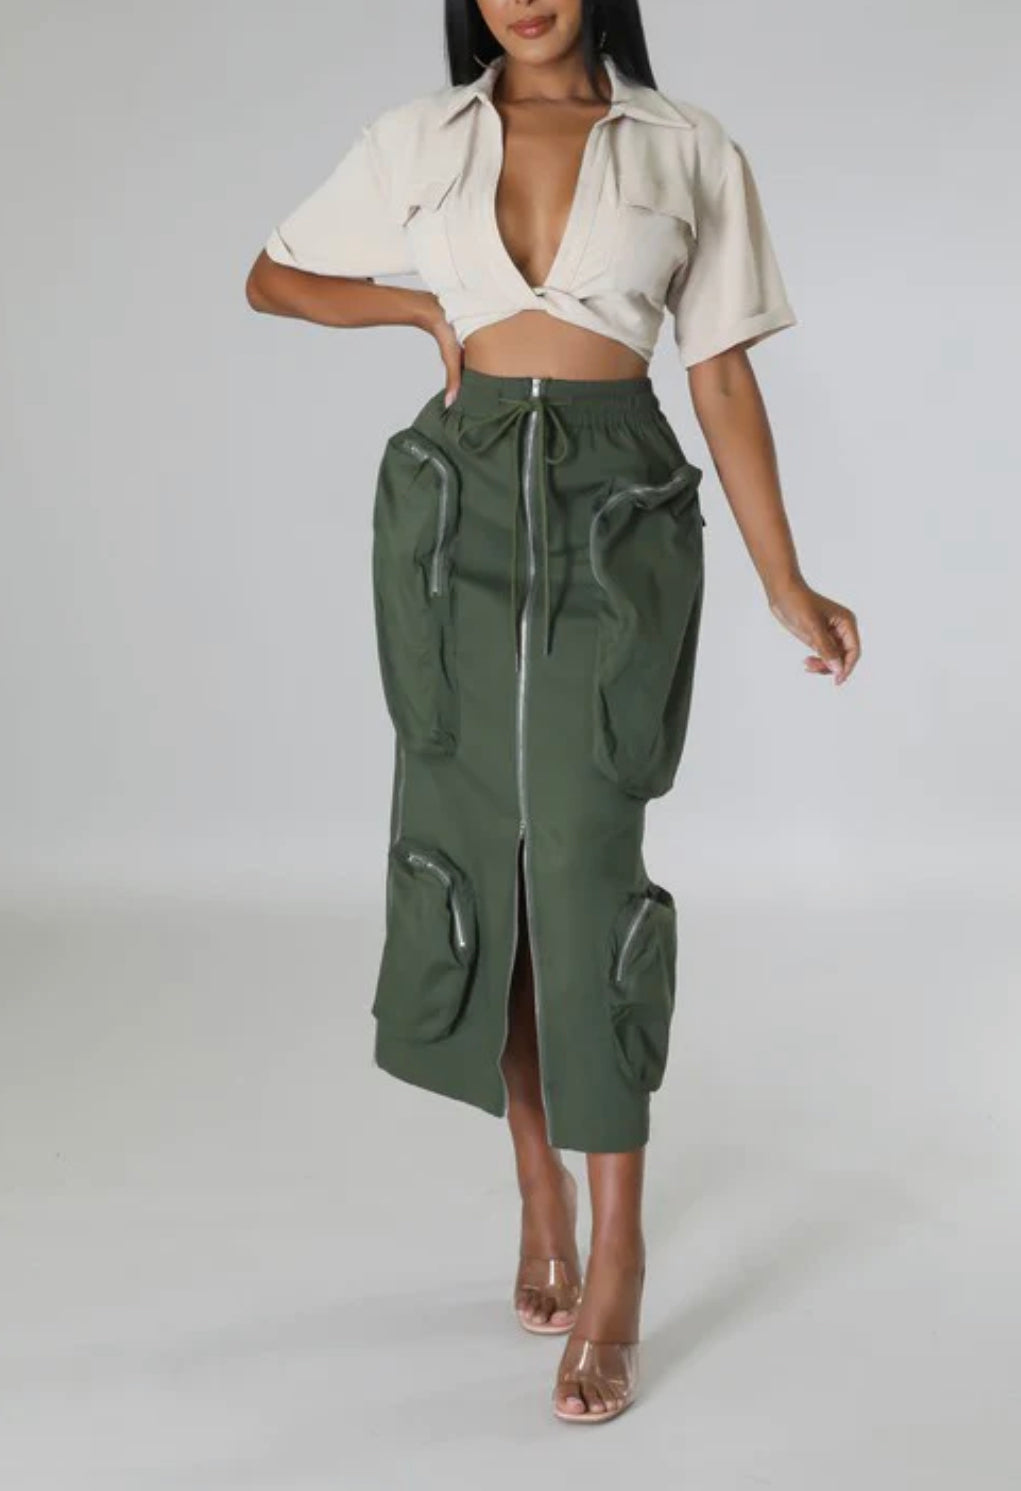 Olive Green Classy Girl Cargo Skirt